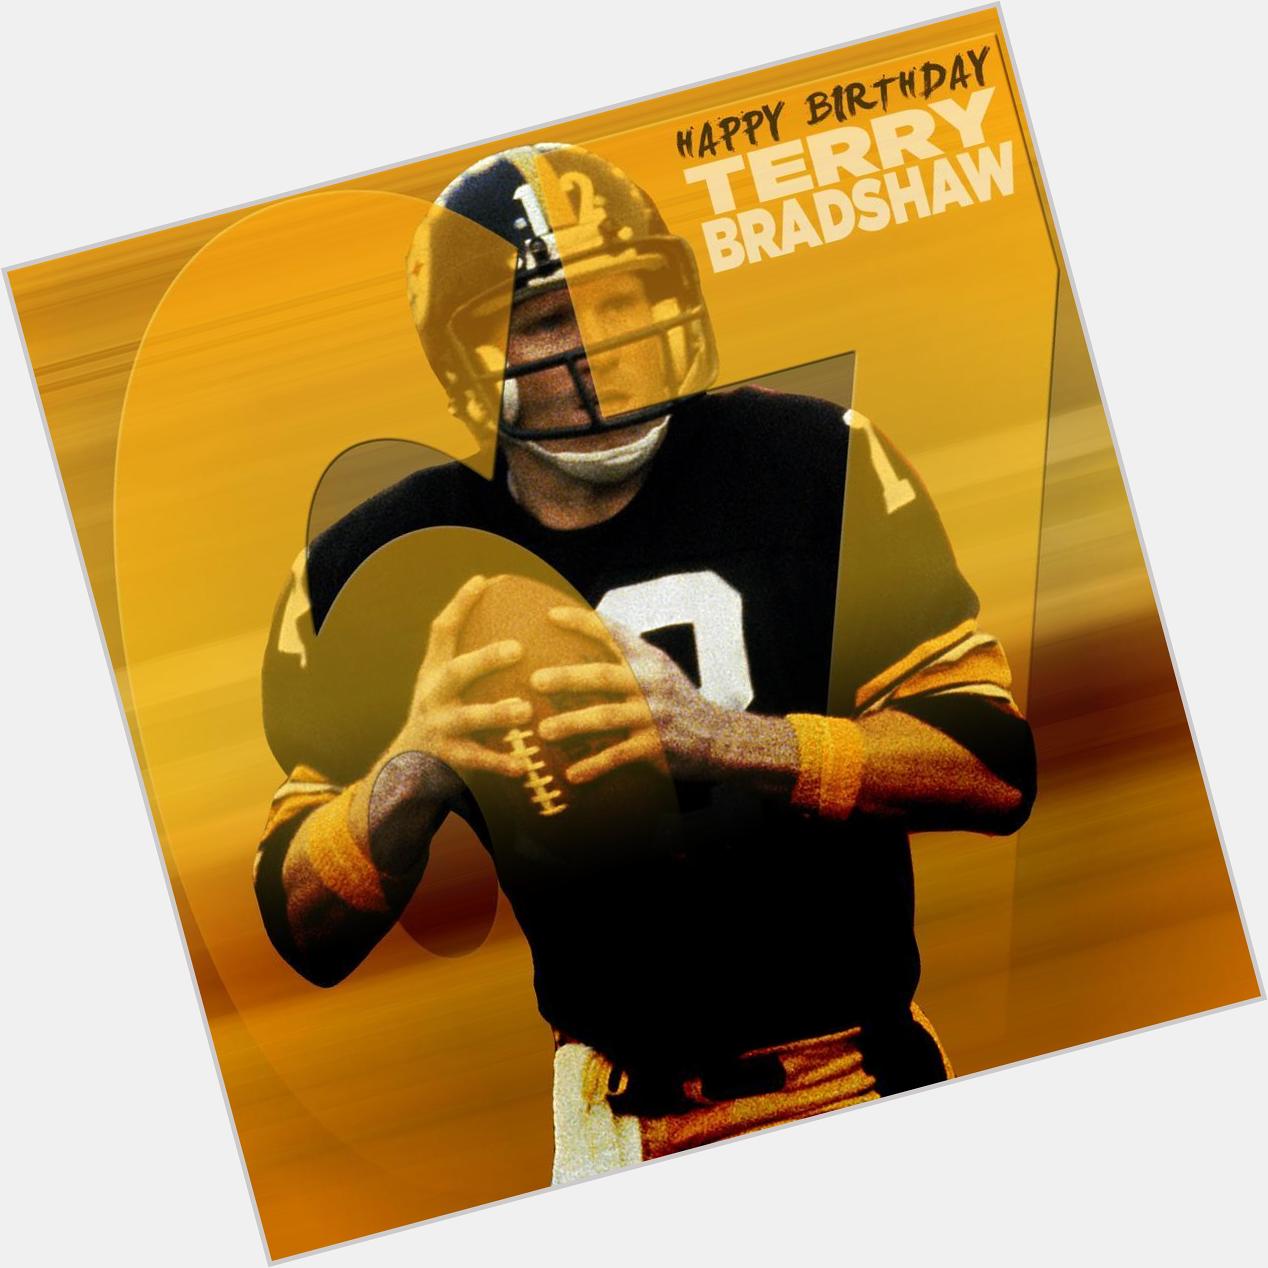 NFL : to help us wish steelers legend Terry Bradshaw a Happy Birthday!  